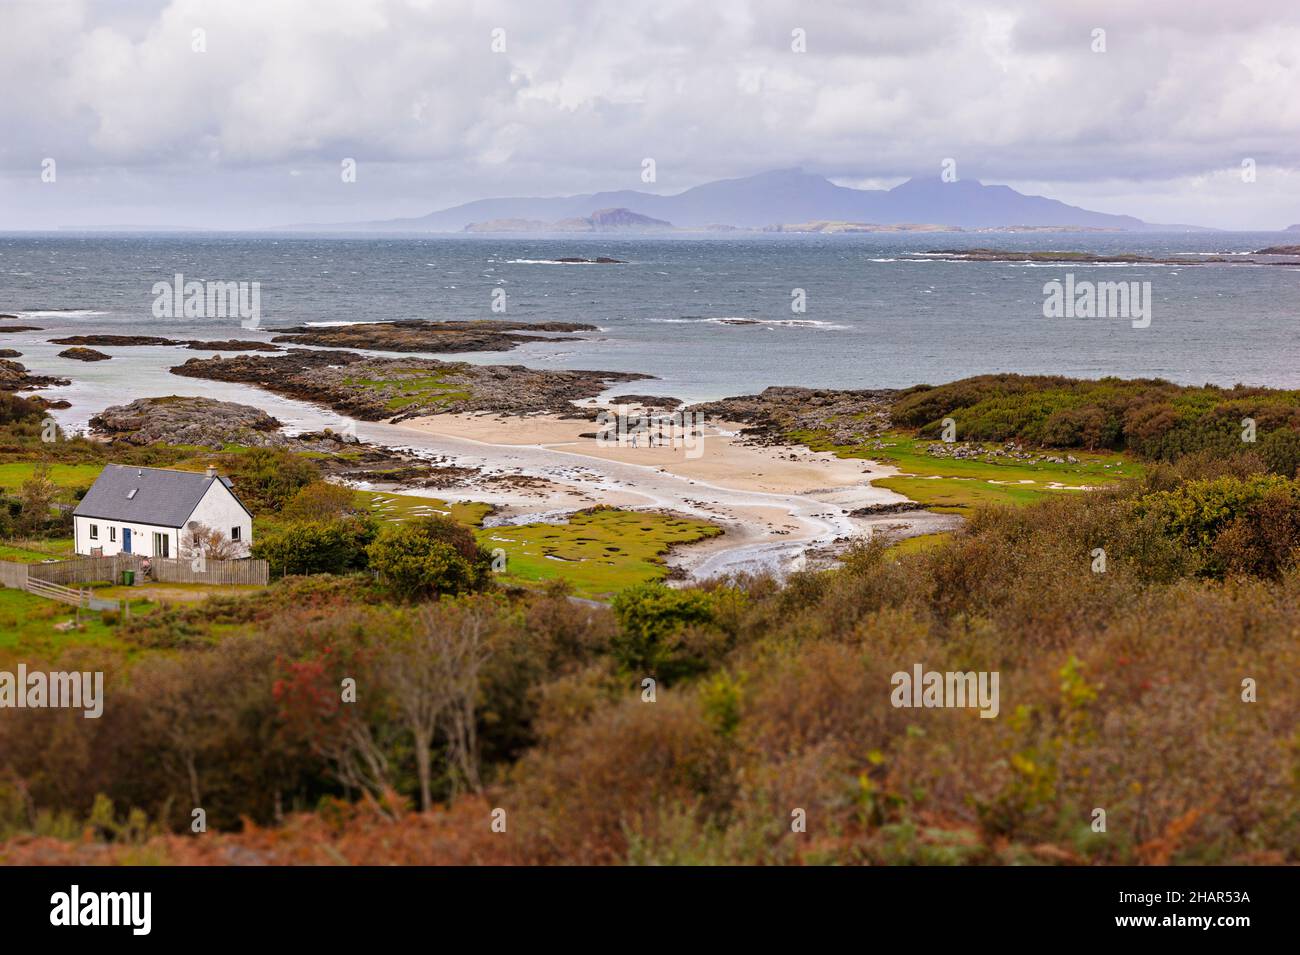 Passeggiate in spiaggia presso la cittadina di Portuairk, l'insediamento più occidentale della terraferma britannica nella Scozia occidentale, con vista sulle piccole isole Foto Stock